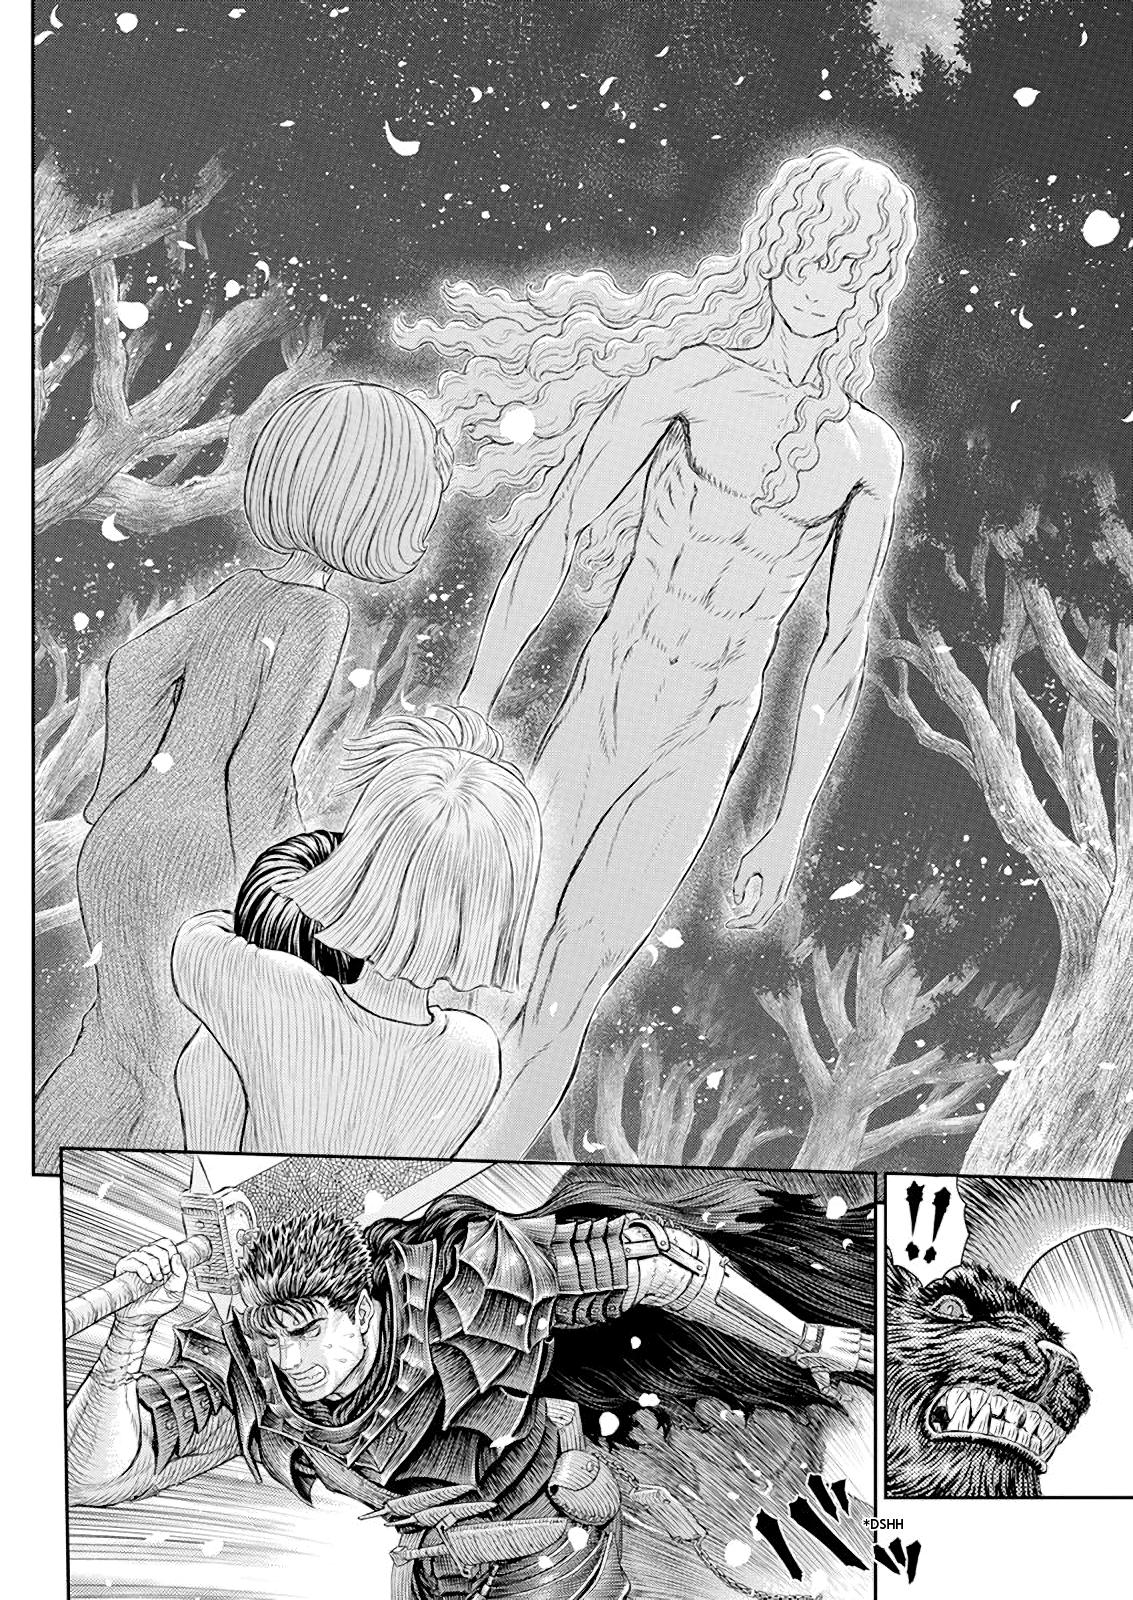 Berserk Manga Chapter 367 image 06